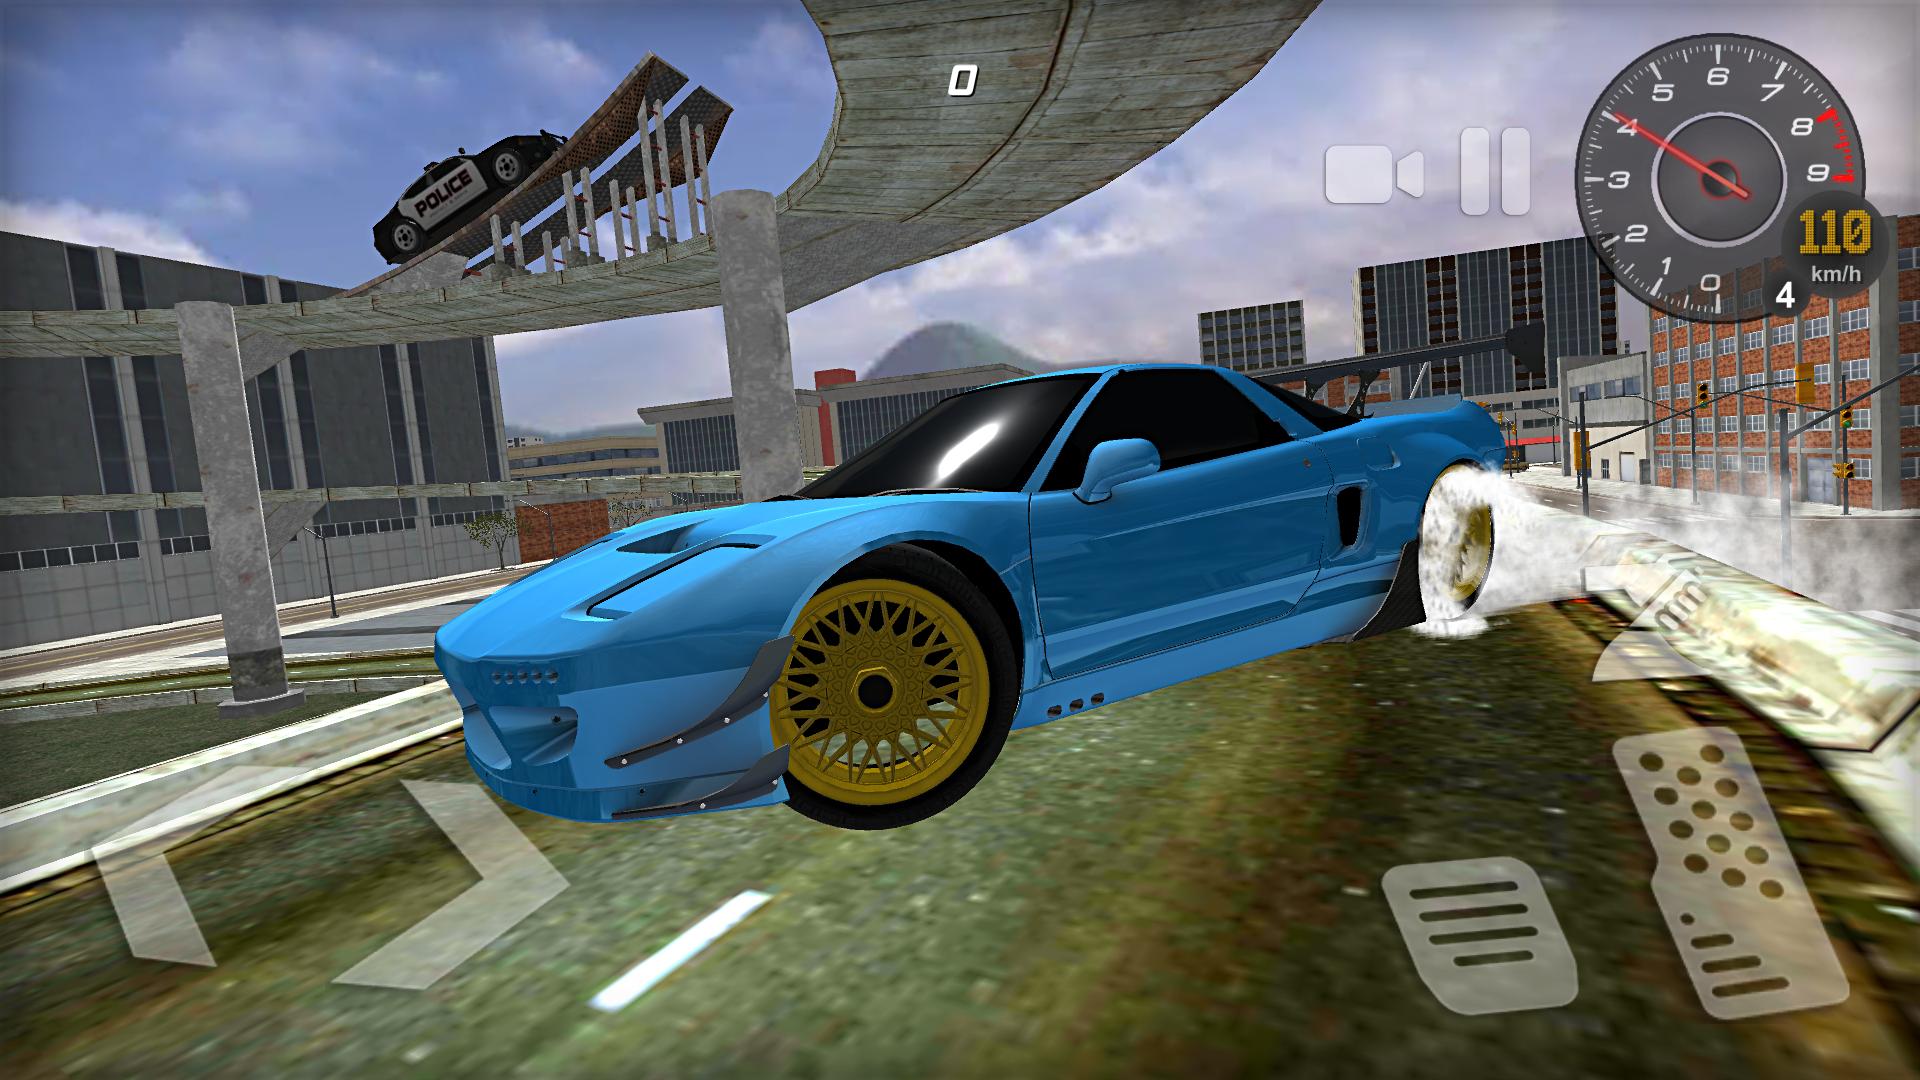 tokyo drift no jogo chamado Crazy cars no site poki games